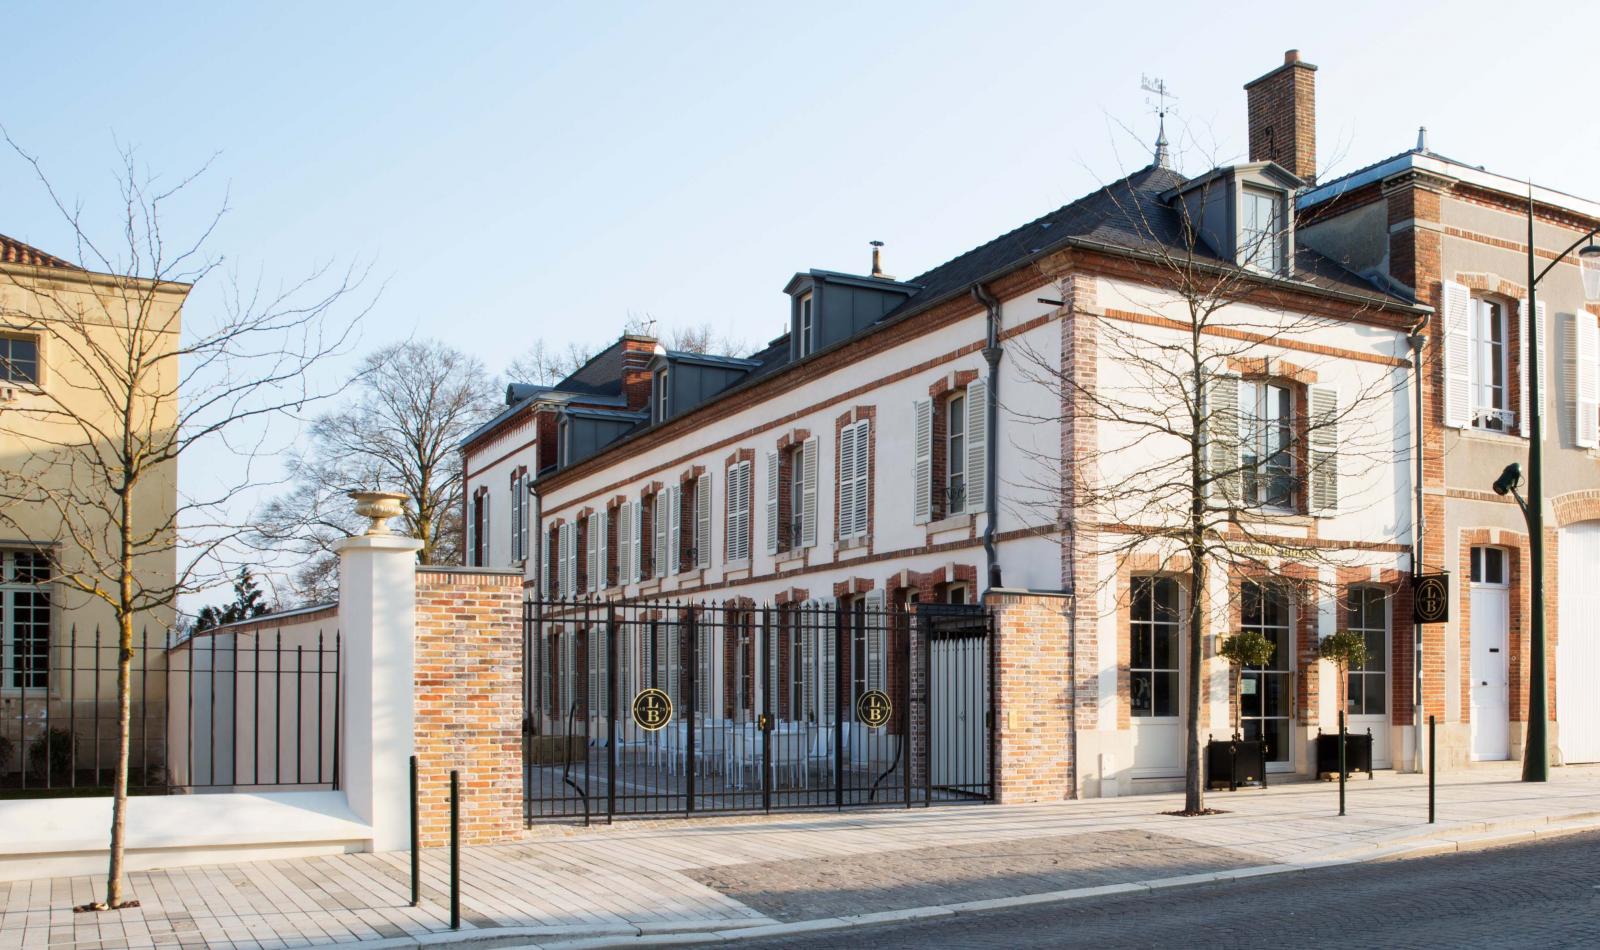 Maison d'Hôtes Le 25bis by Leclerc Briant à Épernay, l'avis d'expert du Figaro